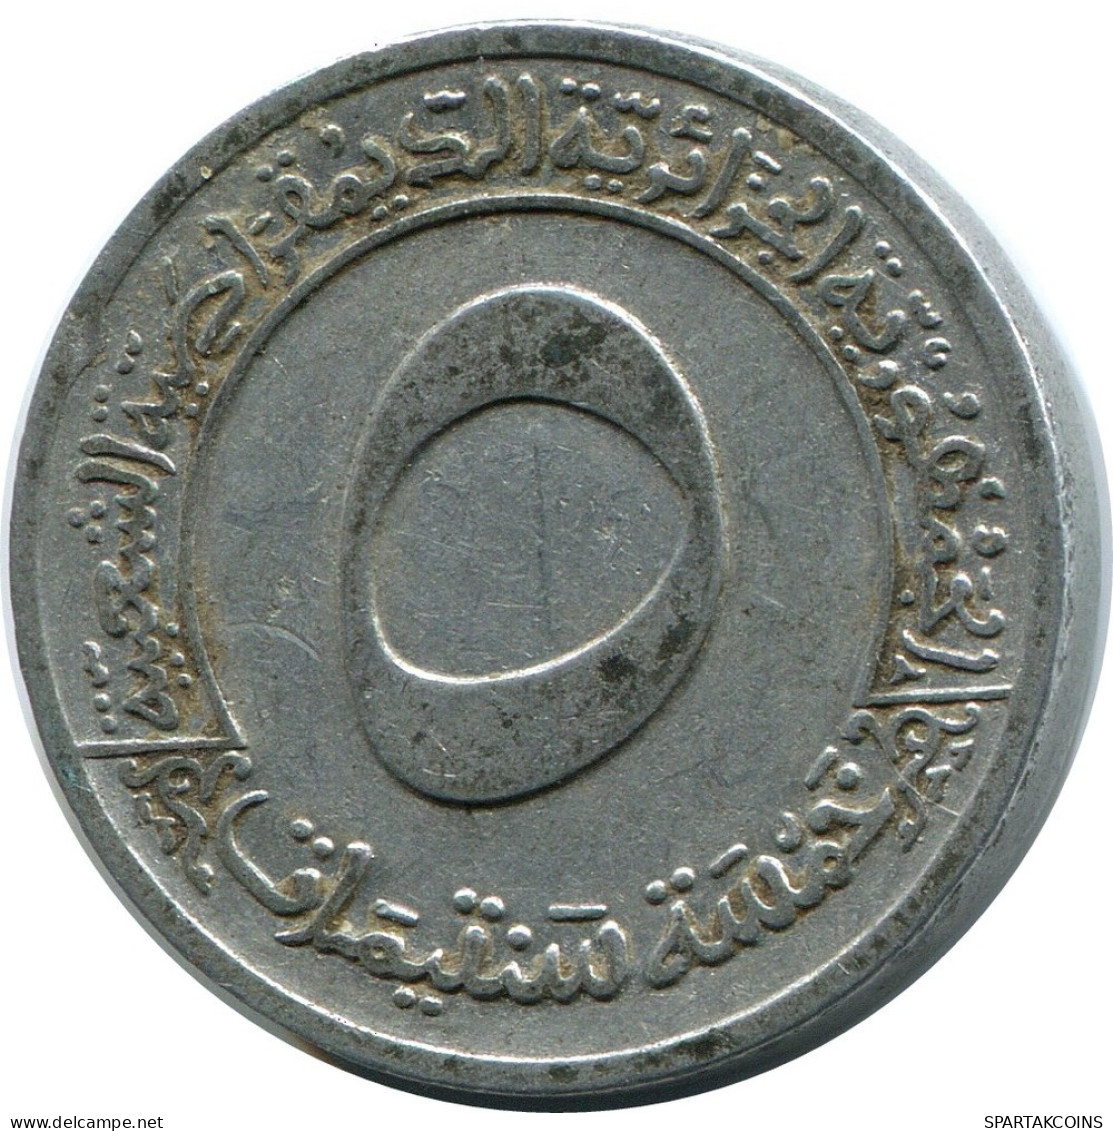 5 CENTIMES 1970 ARGELIA ALGERIA Moneda #AP500.E.A - Algérie